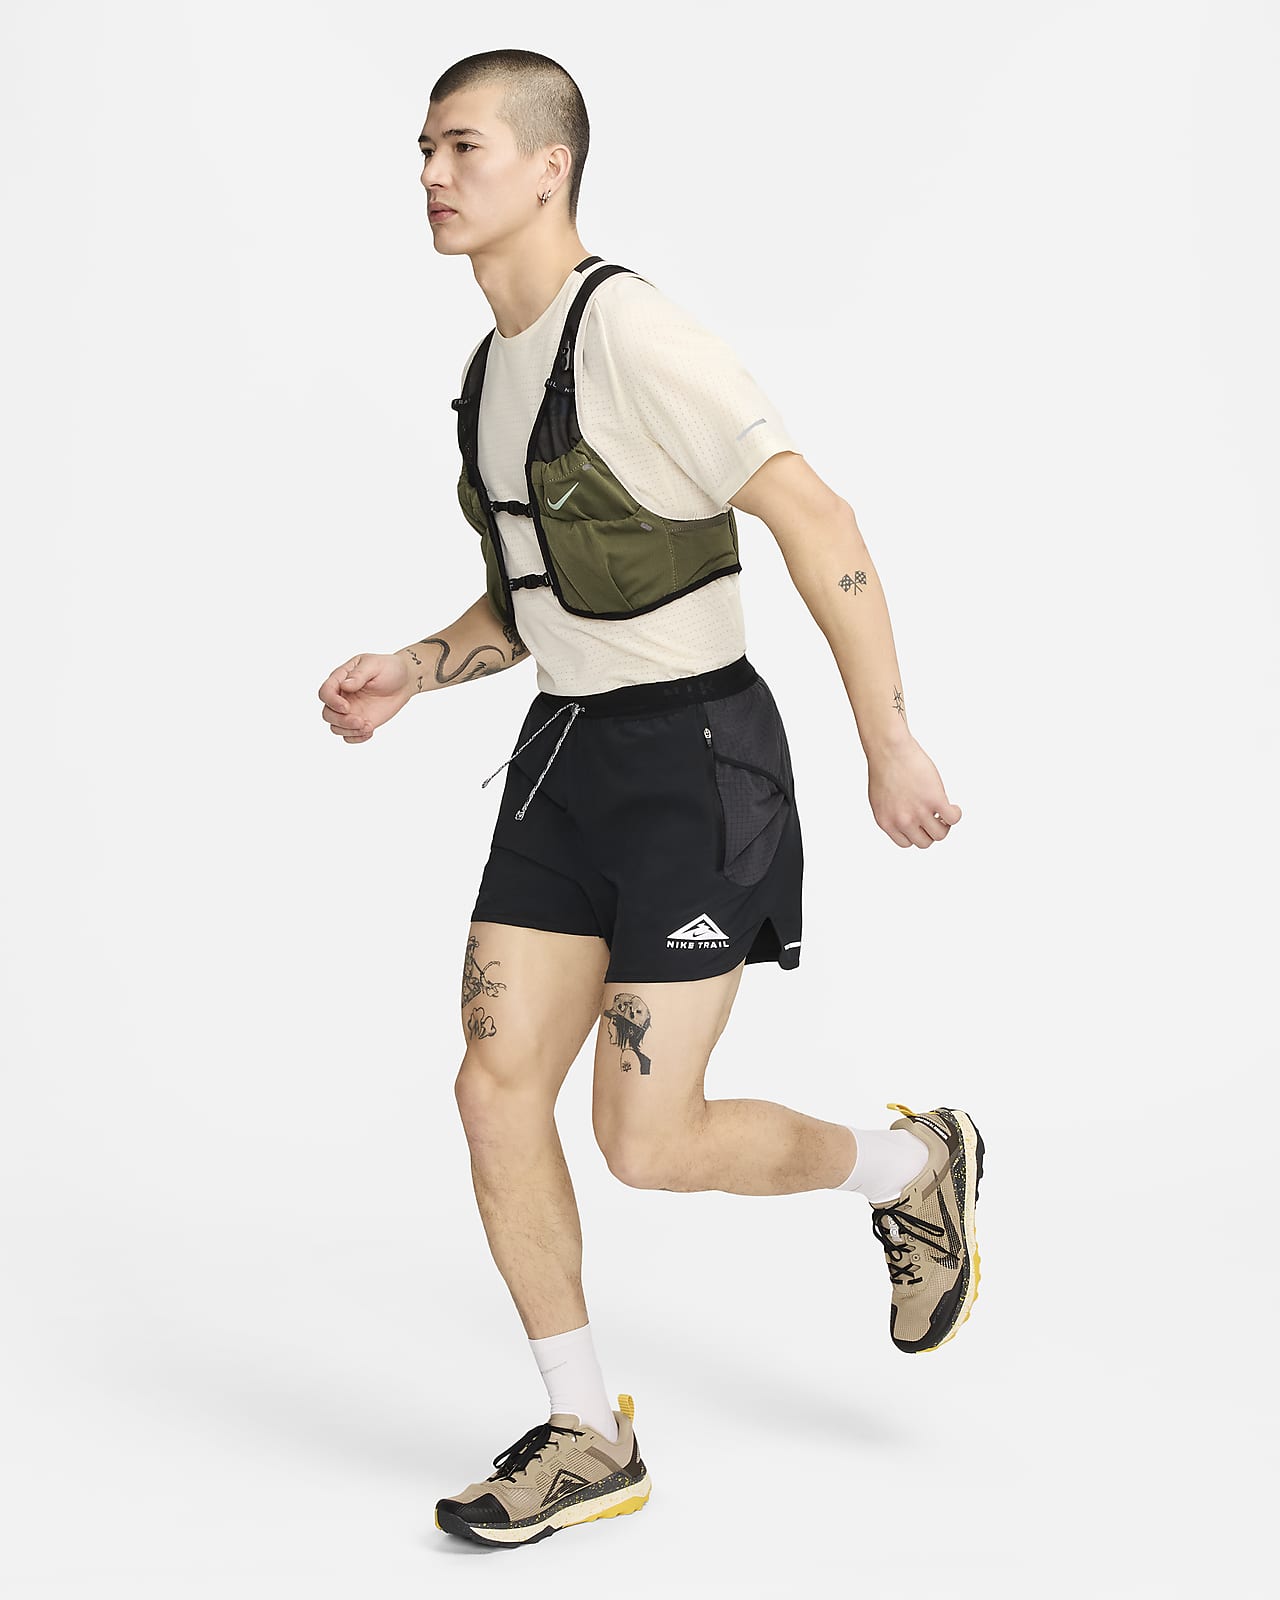 Veste Nike Running 2.0